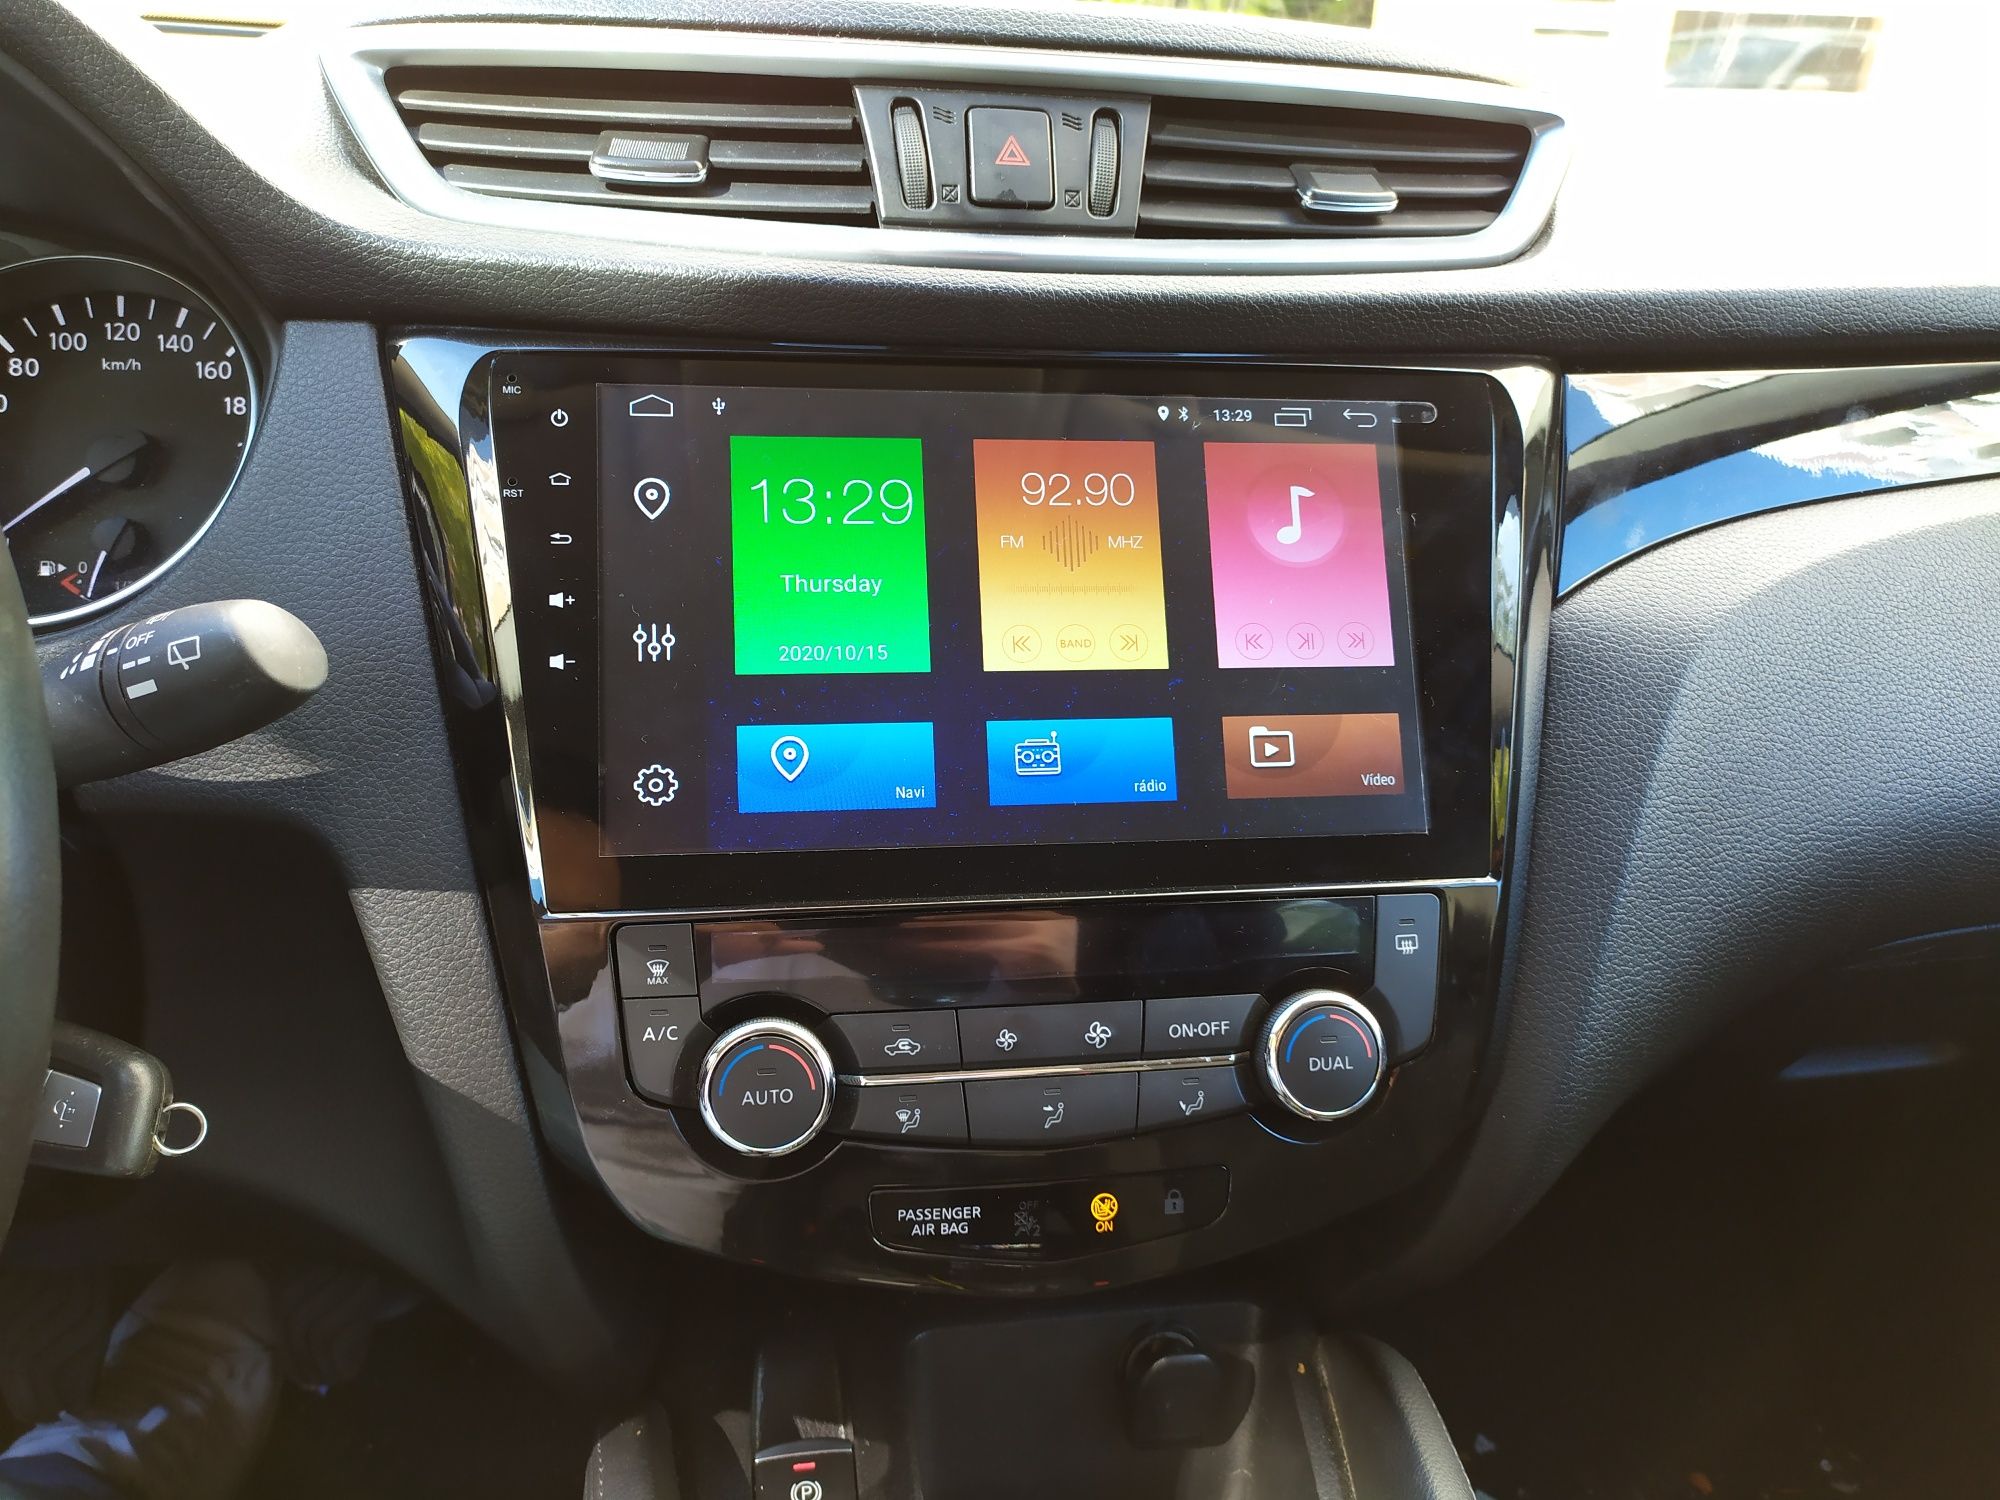 Auto rádio Nissan Qashqai X-Trail Gps Bluetooth USB Carplay & Android